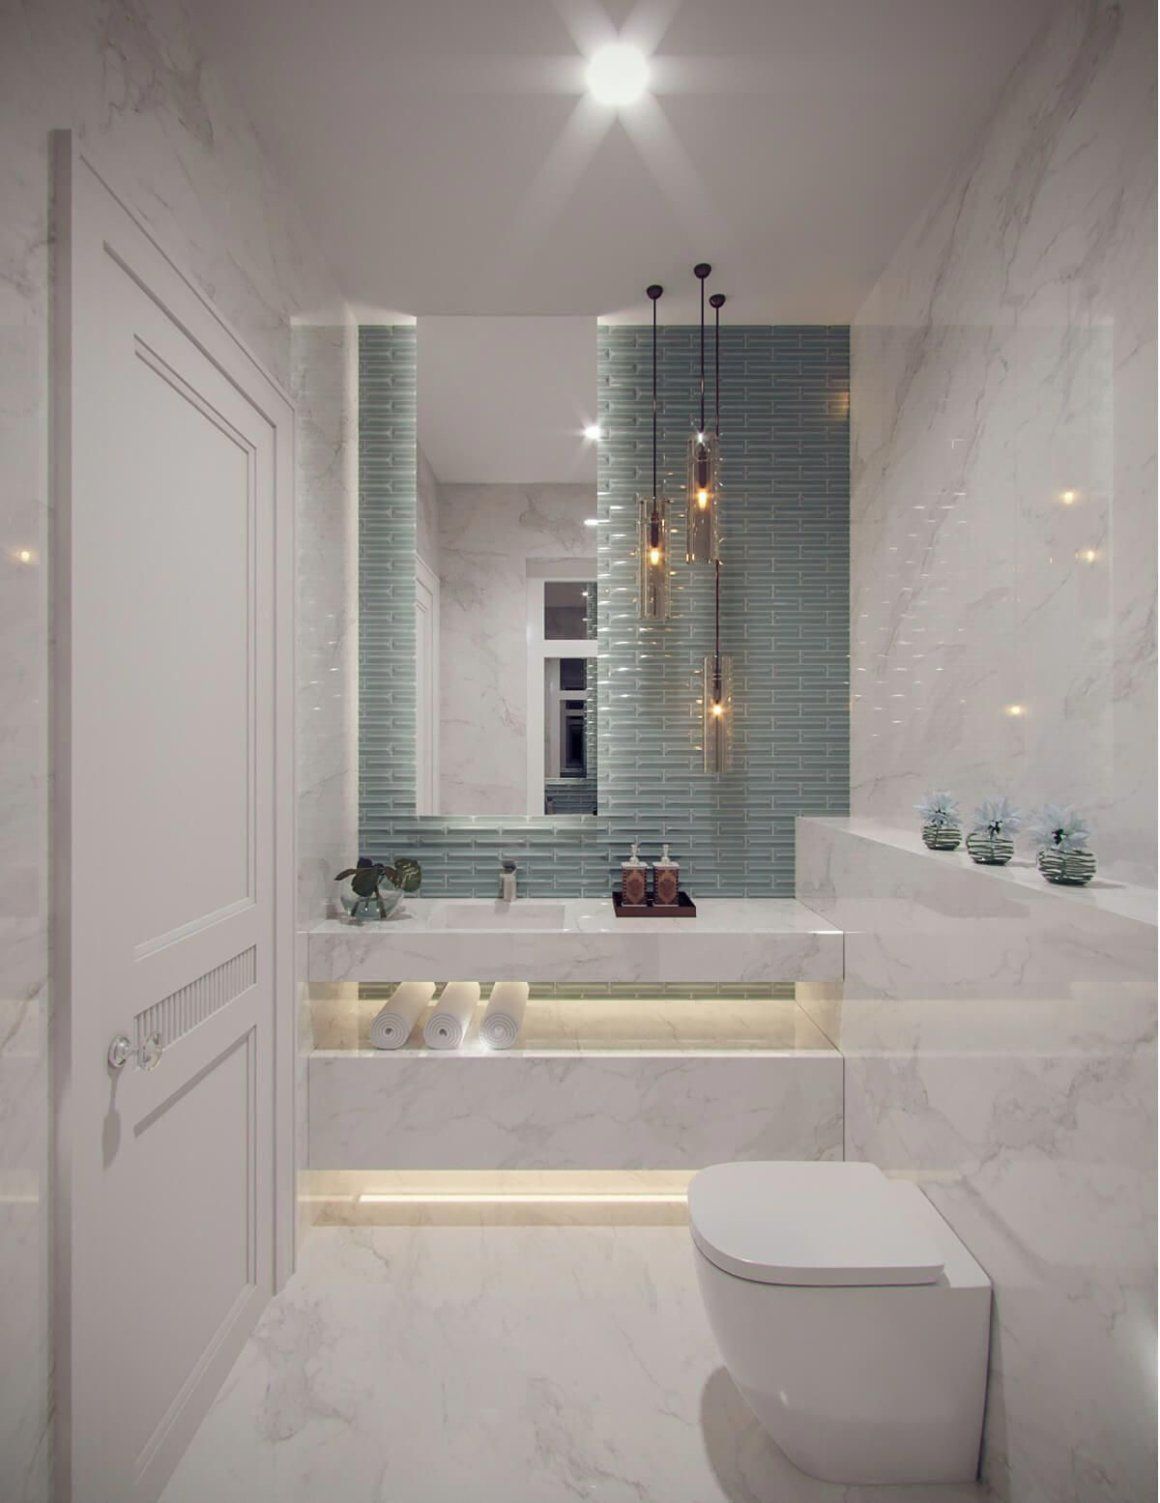 رنگ سفید یا روشن برای طراحی و دکور حمام